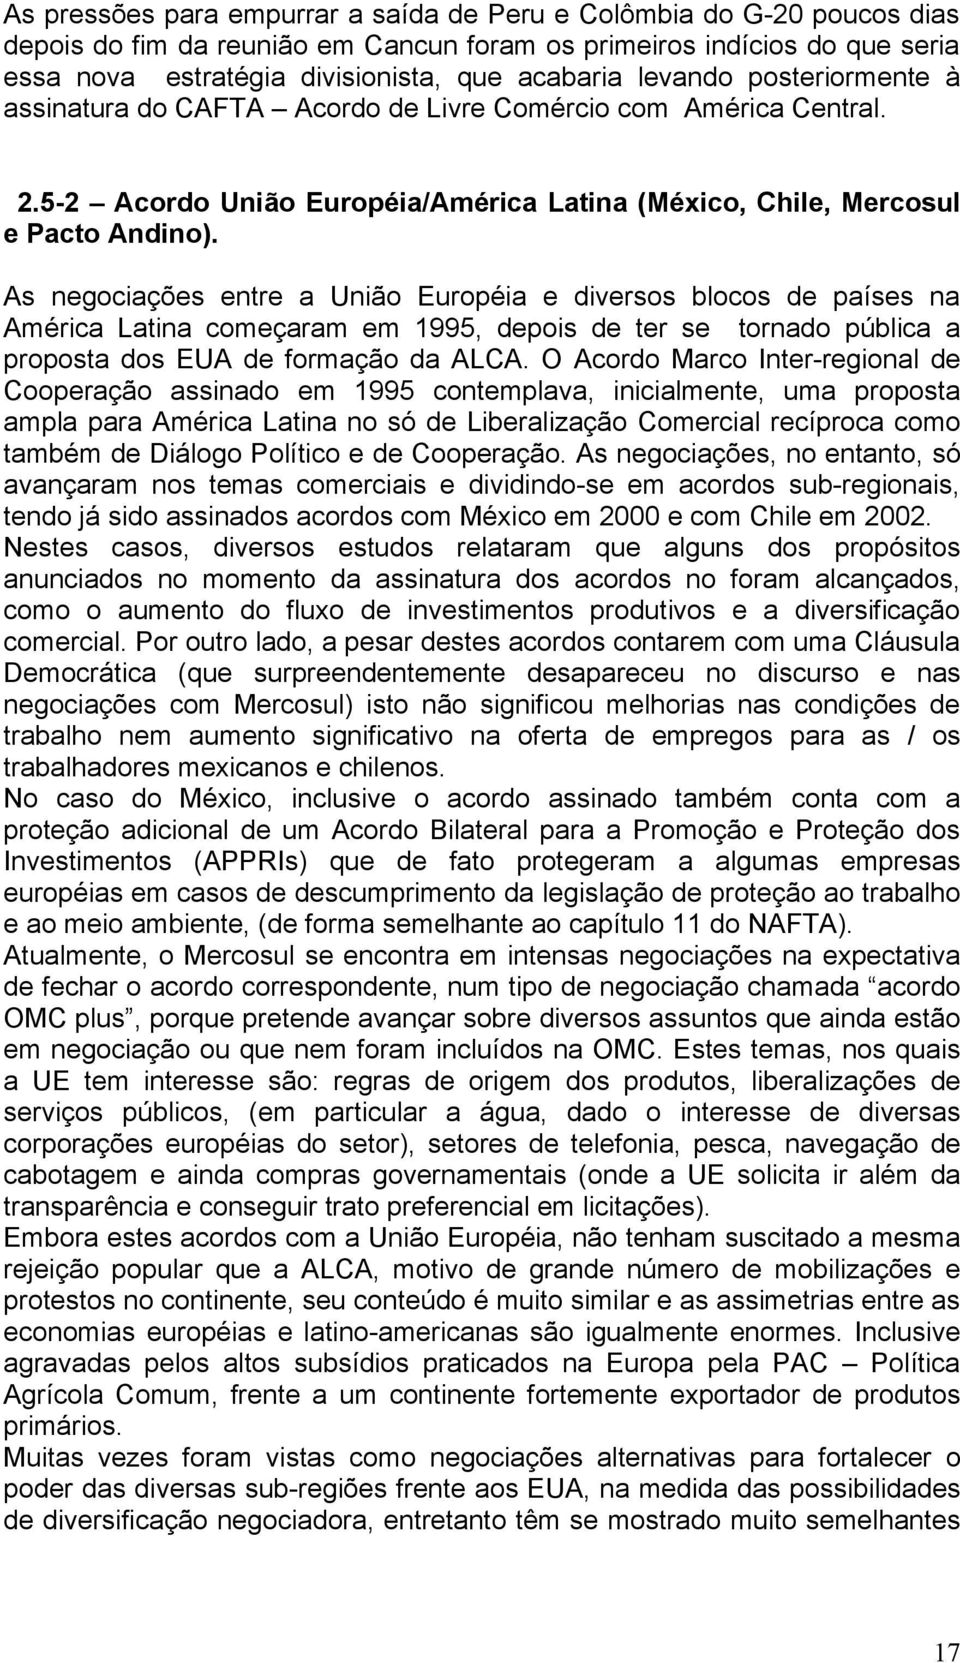 As negociações entre a União Européia e diversos blocos de países na América Latina começaram em 1995, depois de ter se tornado pública a proposta dos EUA de formação da ALCA.